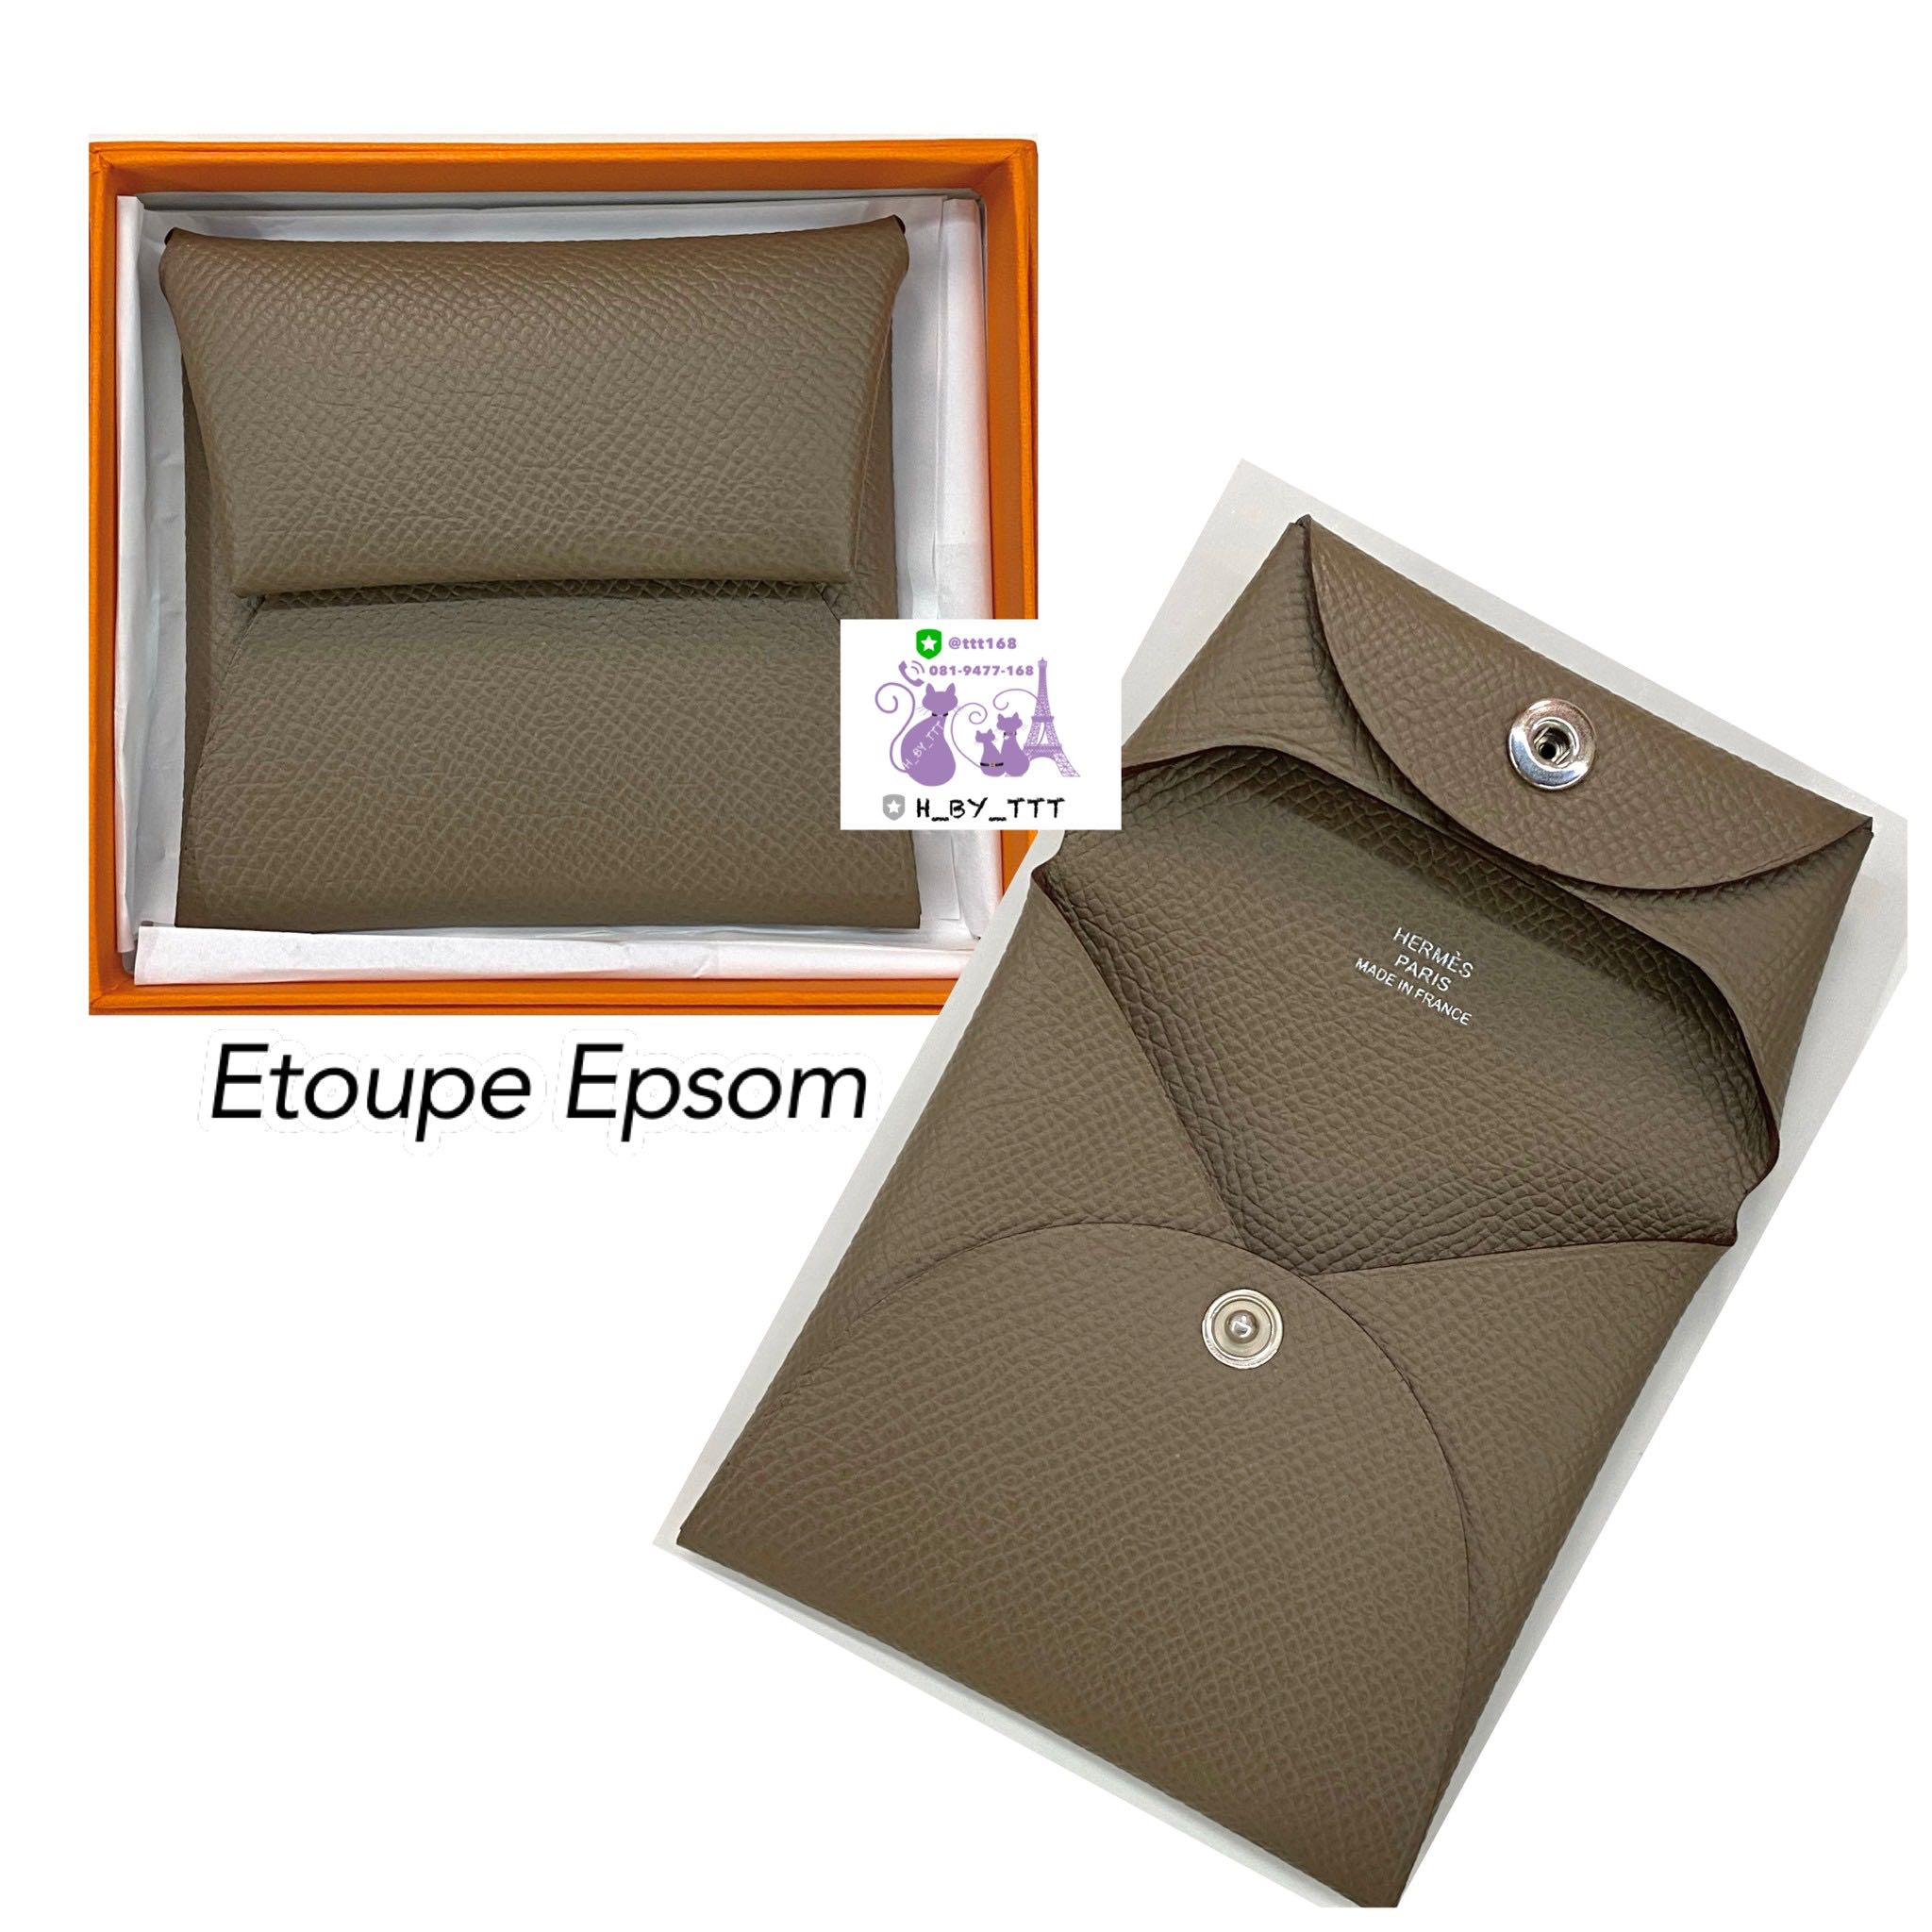 Hermes Etoupe Epsom Calvi Card Case Holder Wallet